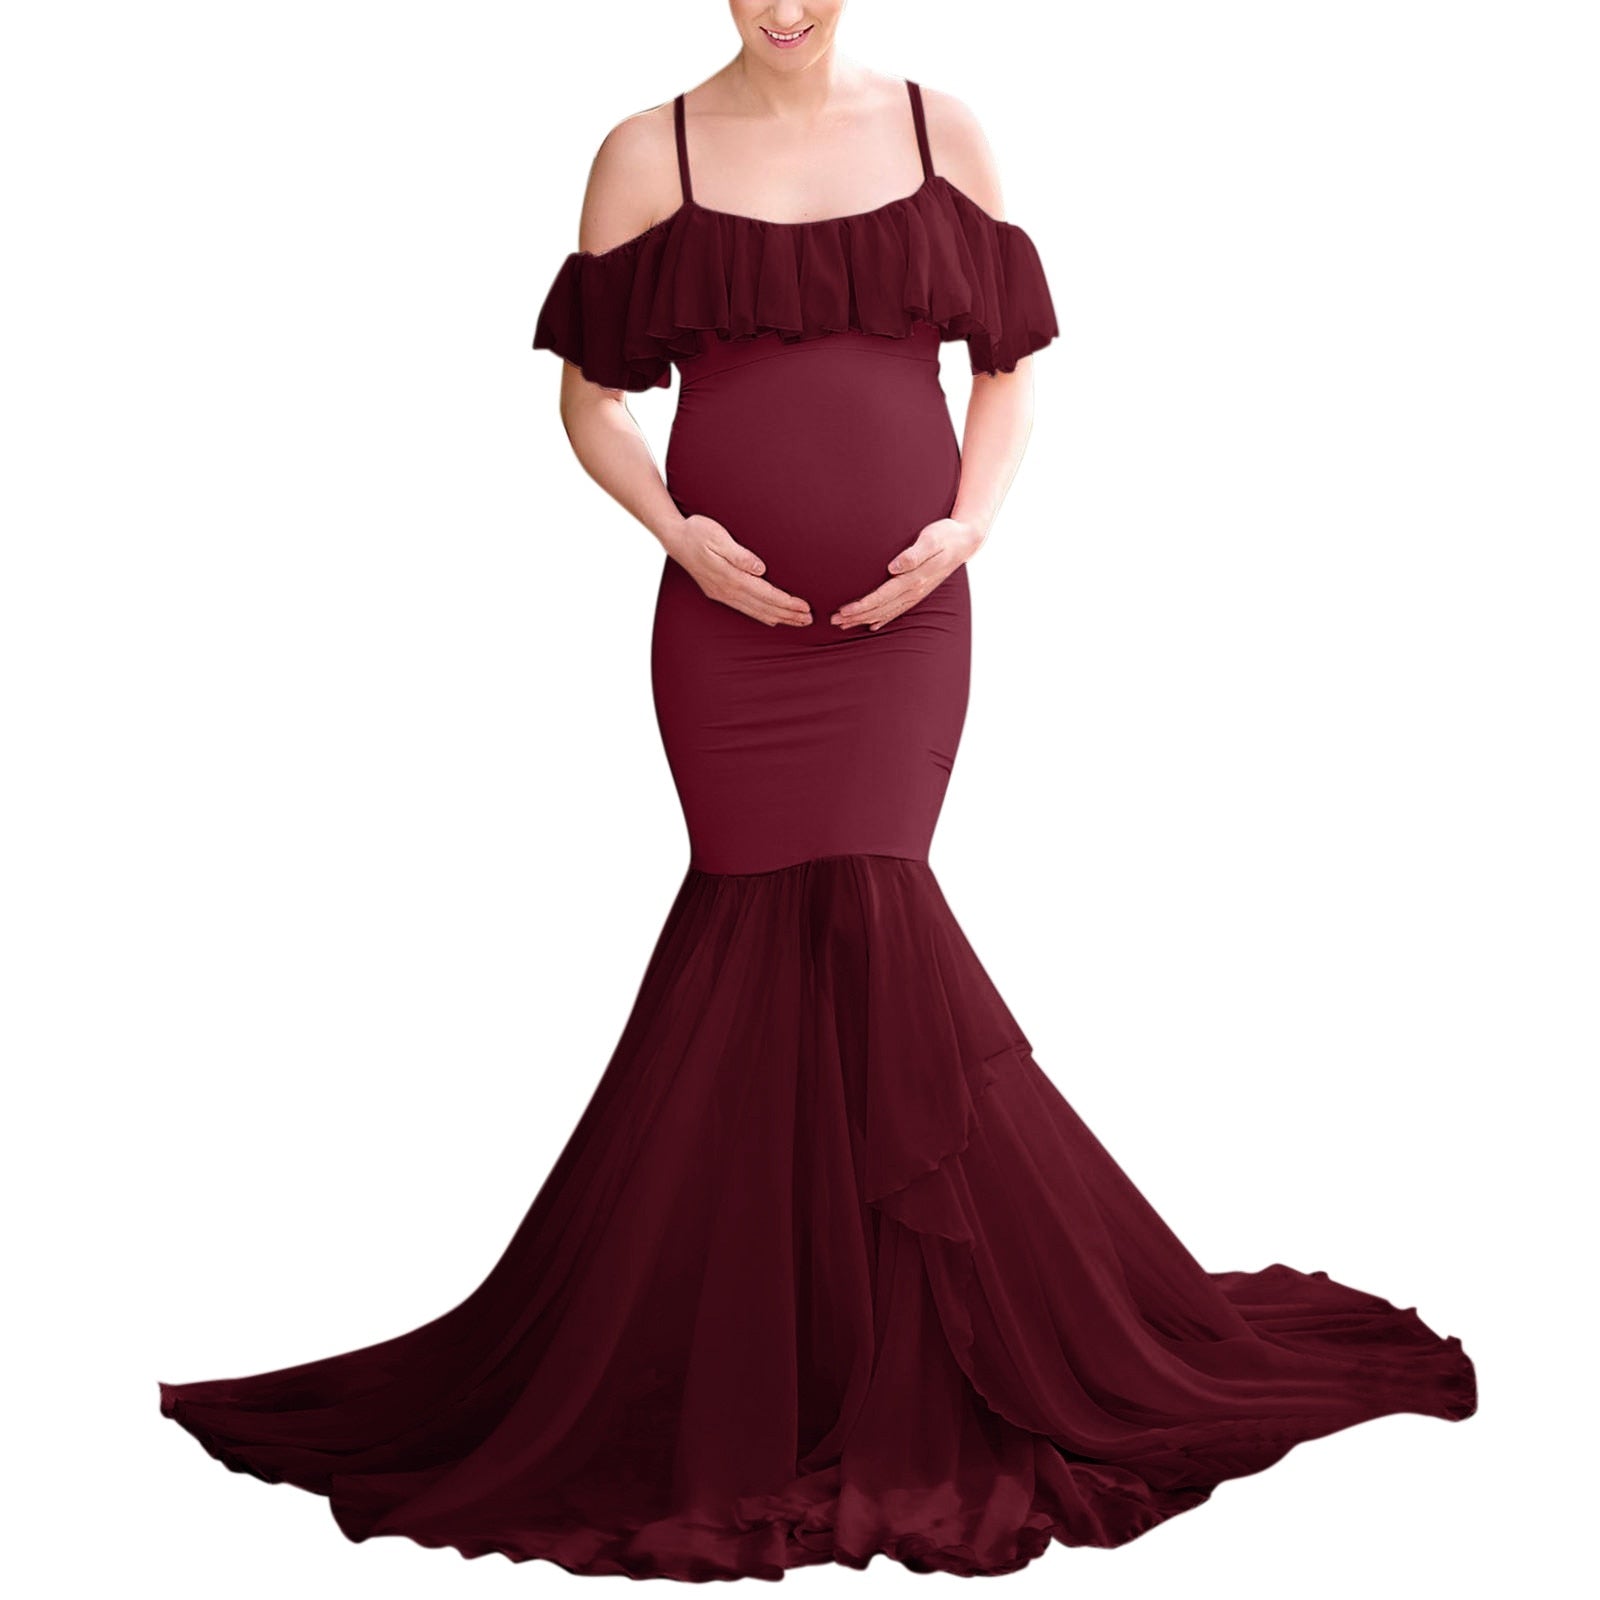 Maternity Dresses For Photo Shoot Pregnant Women Summer Pregnancy Dress